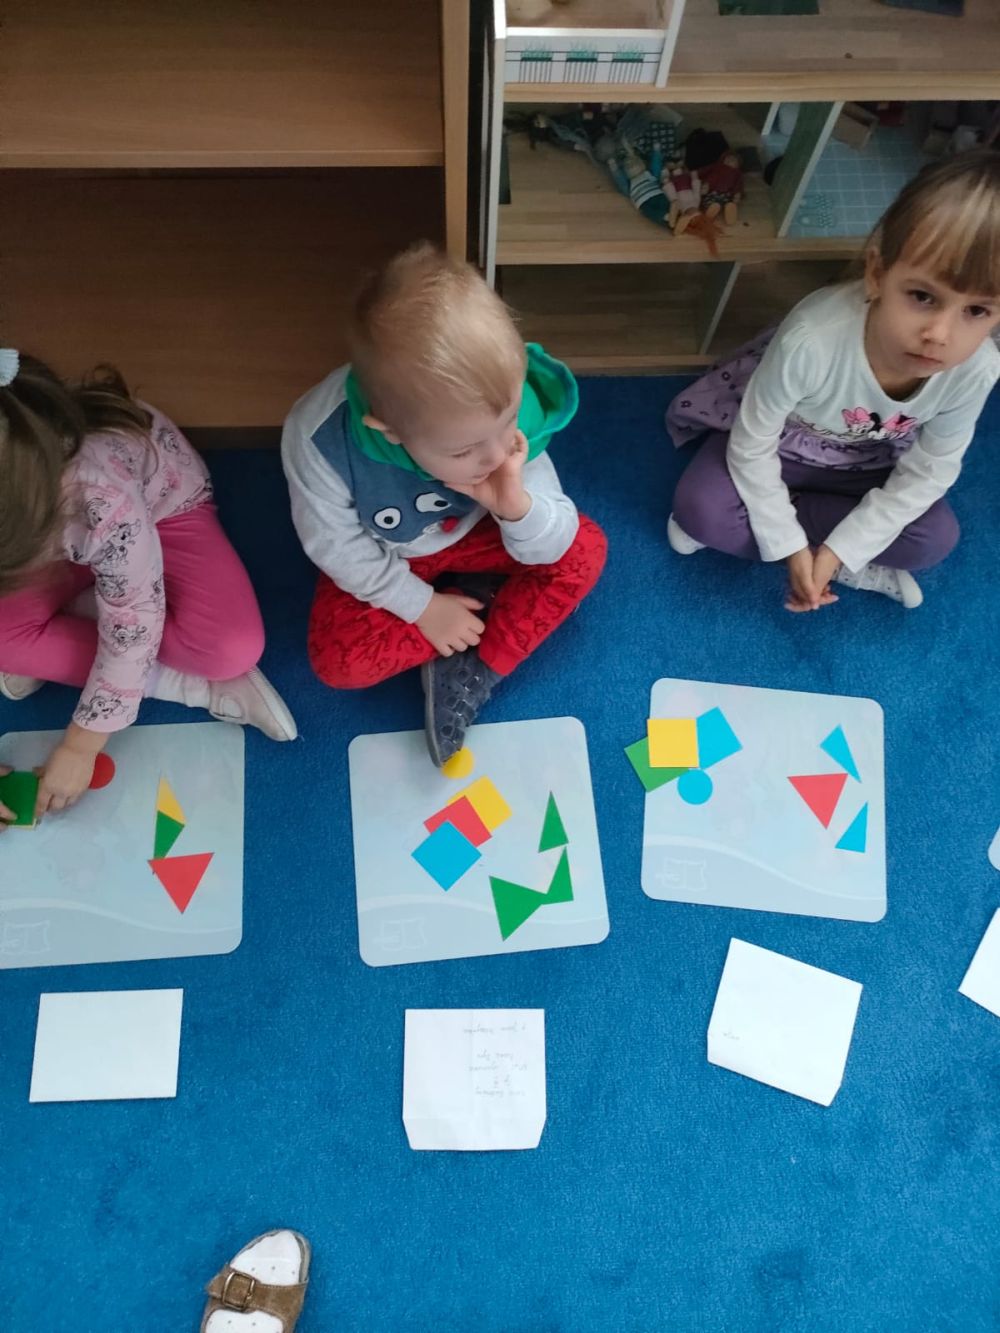 Dzieci siedzą na dywanie a przed nimi na białych podkładkach leżą papierowe figury geometryczne